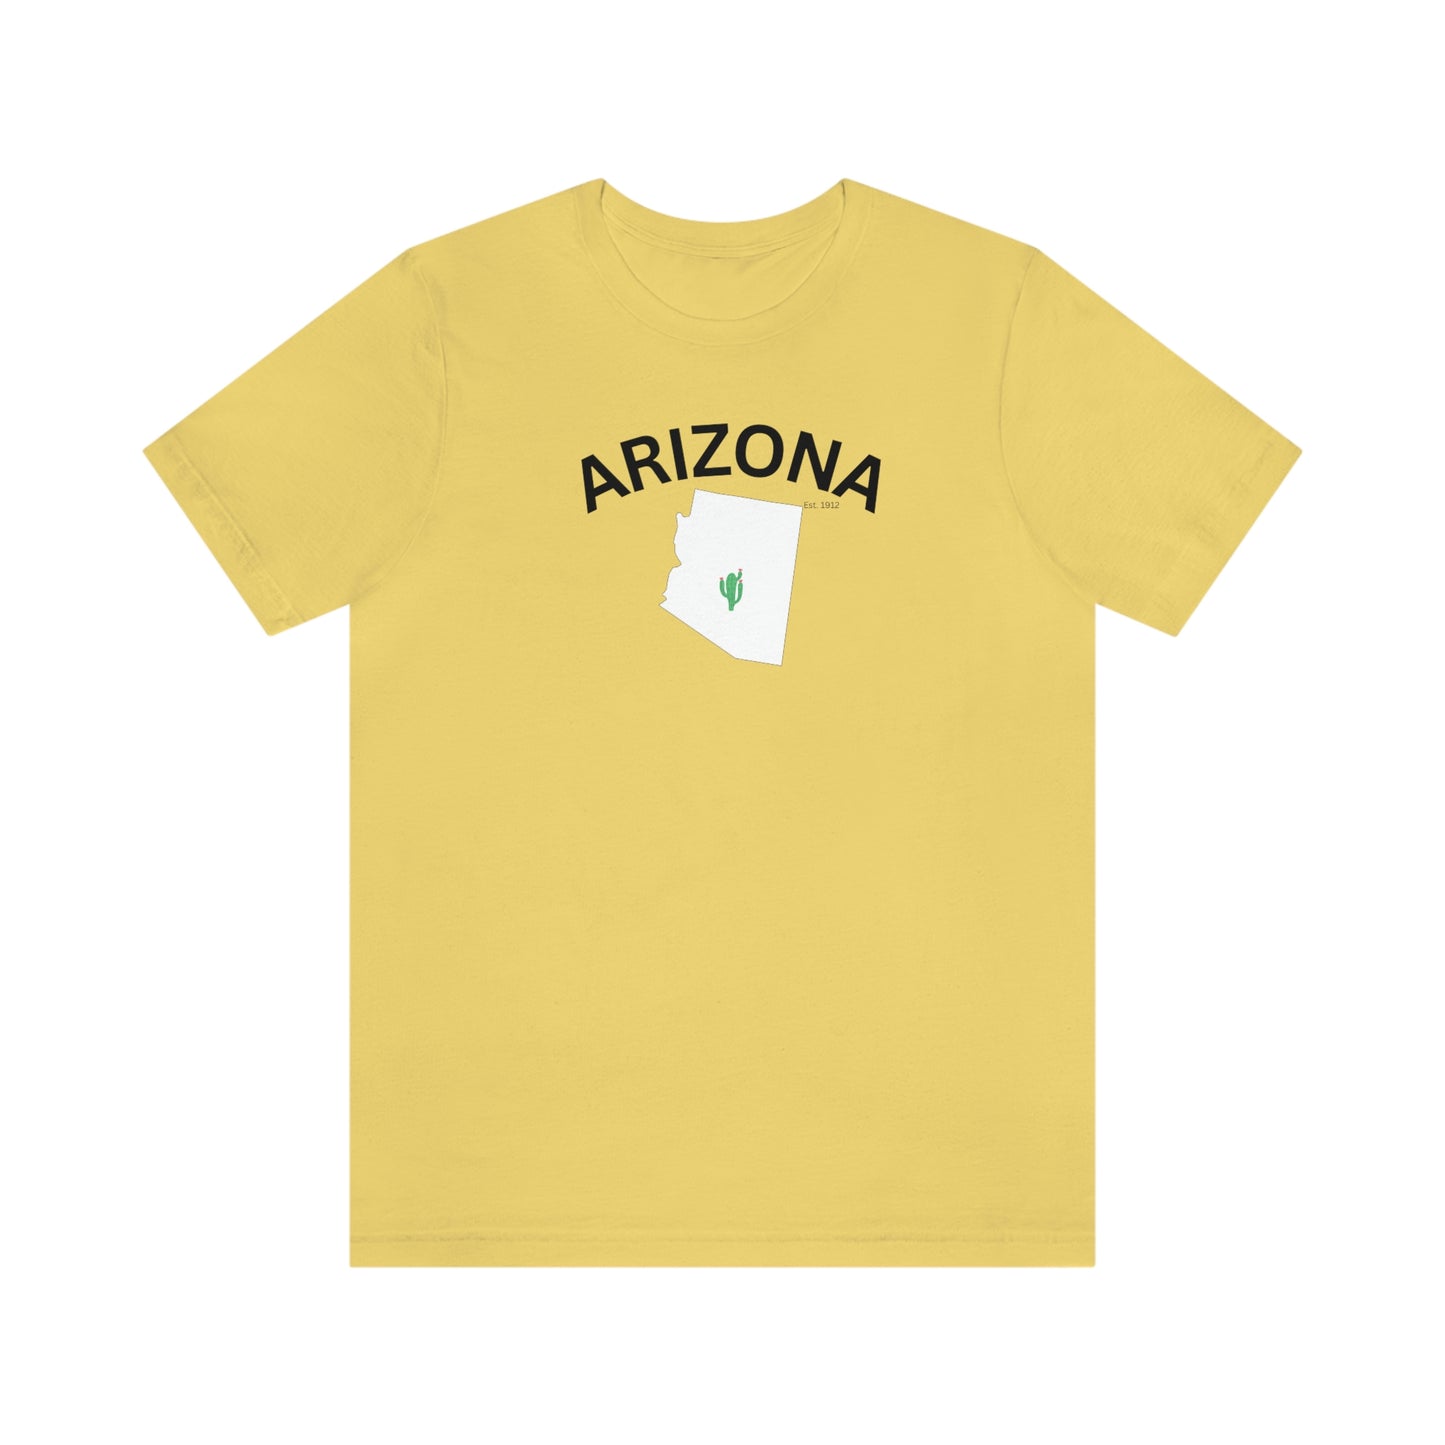 Arizona Unisex Jersey Short Sleeve Tee